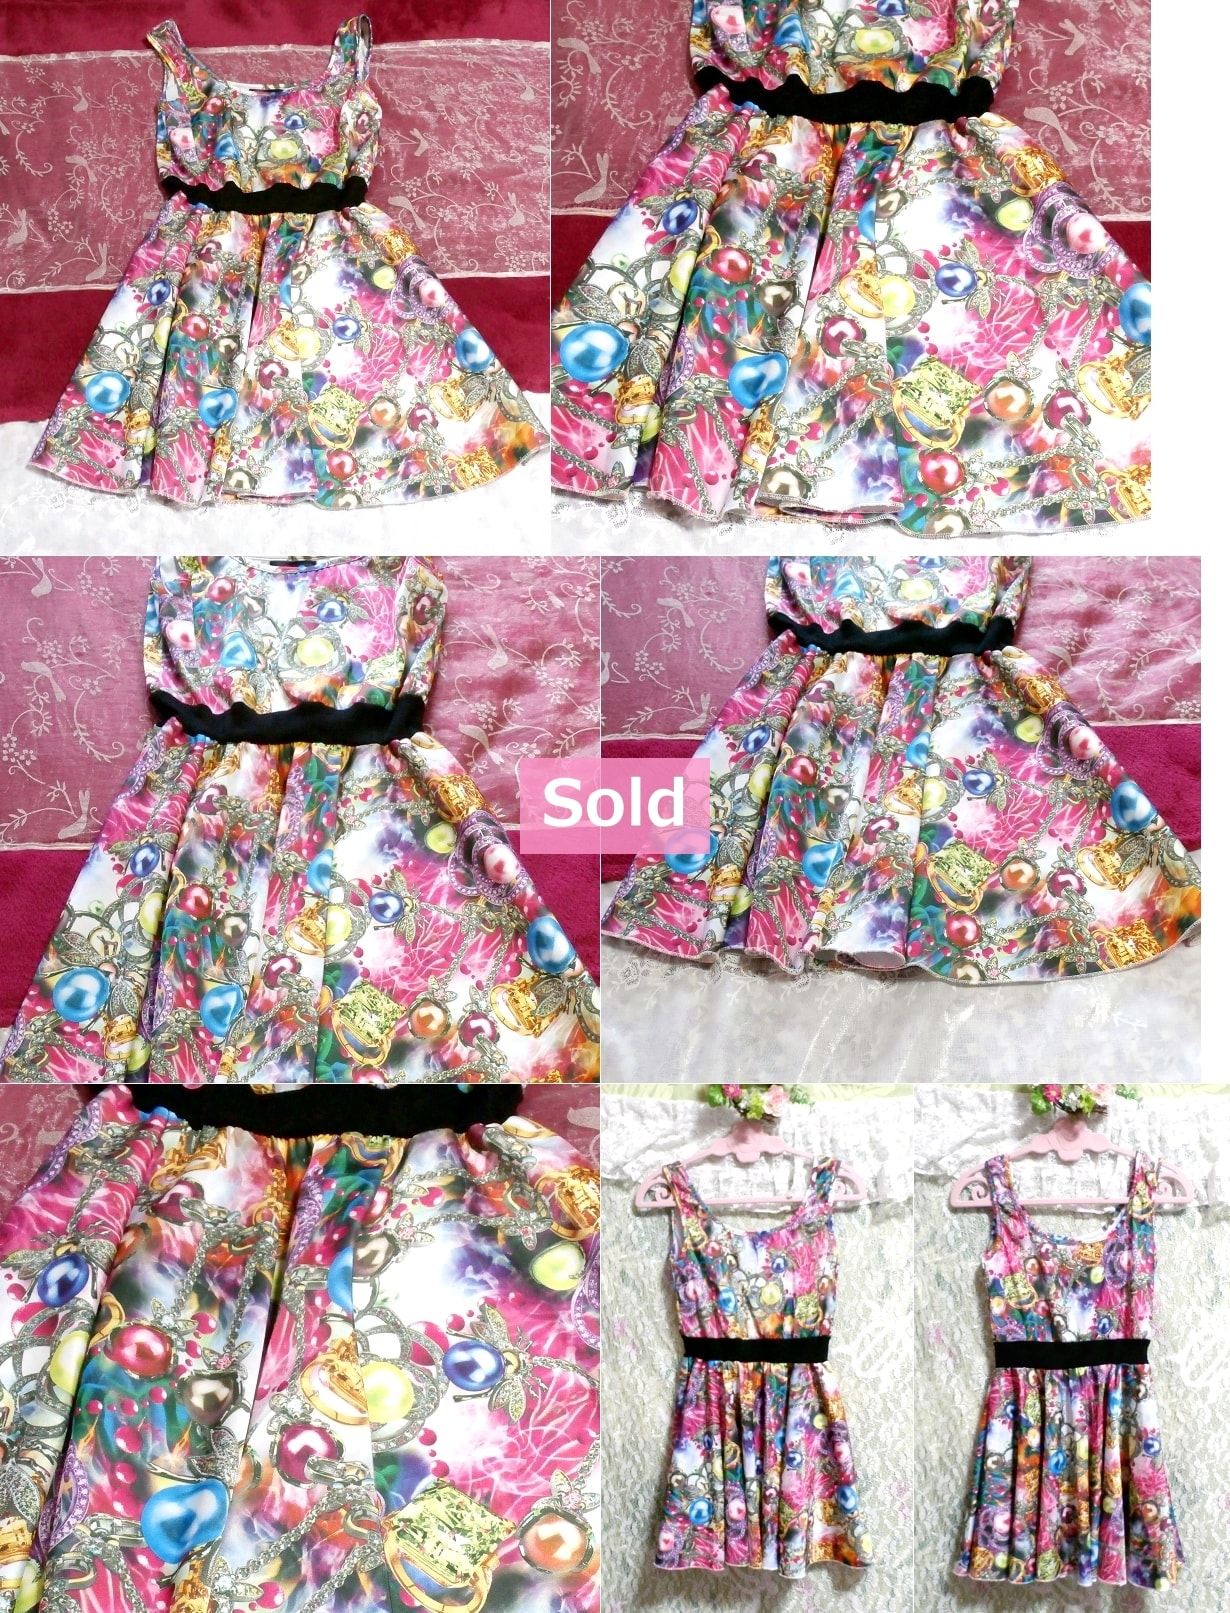 水着のような宝石カラフルイラストノースリーブミニスカートワンピース/コスプレ Jewelry pattern colorful skirt onepiece/tunic/cosplay